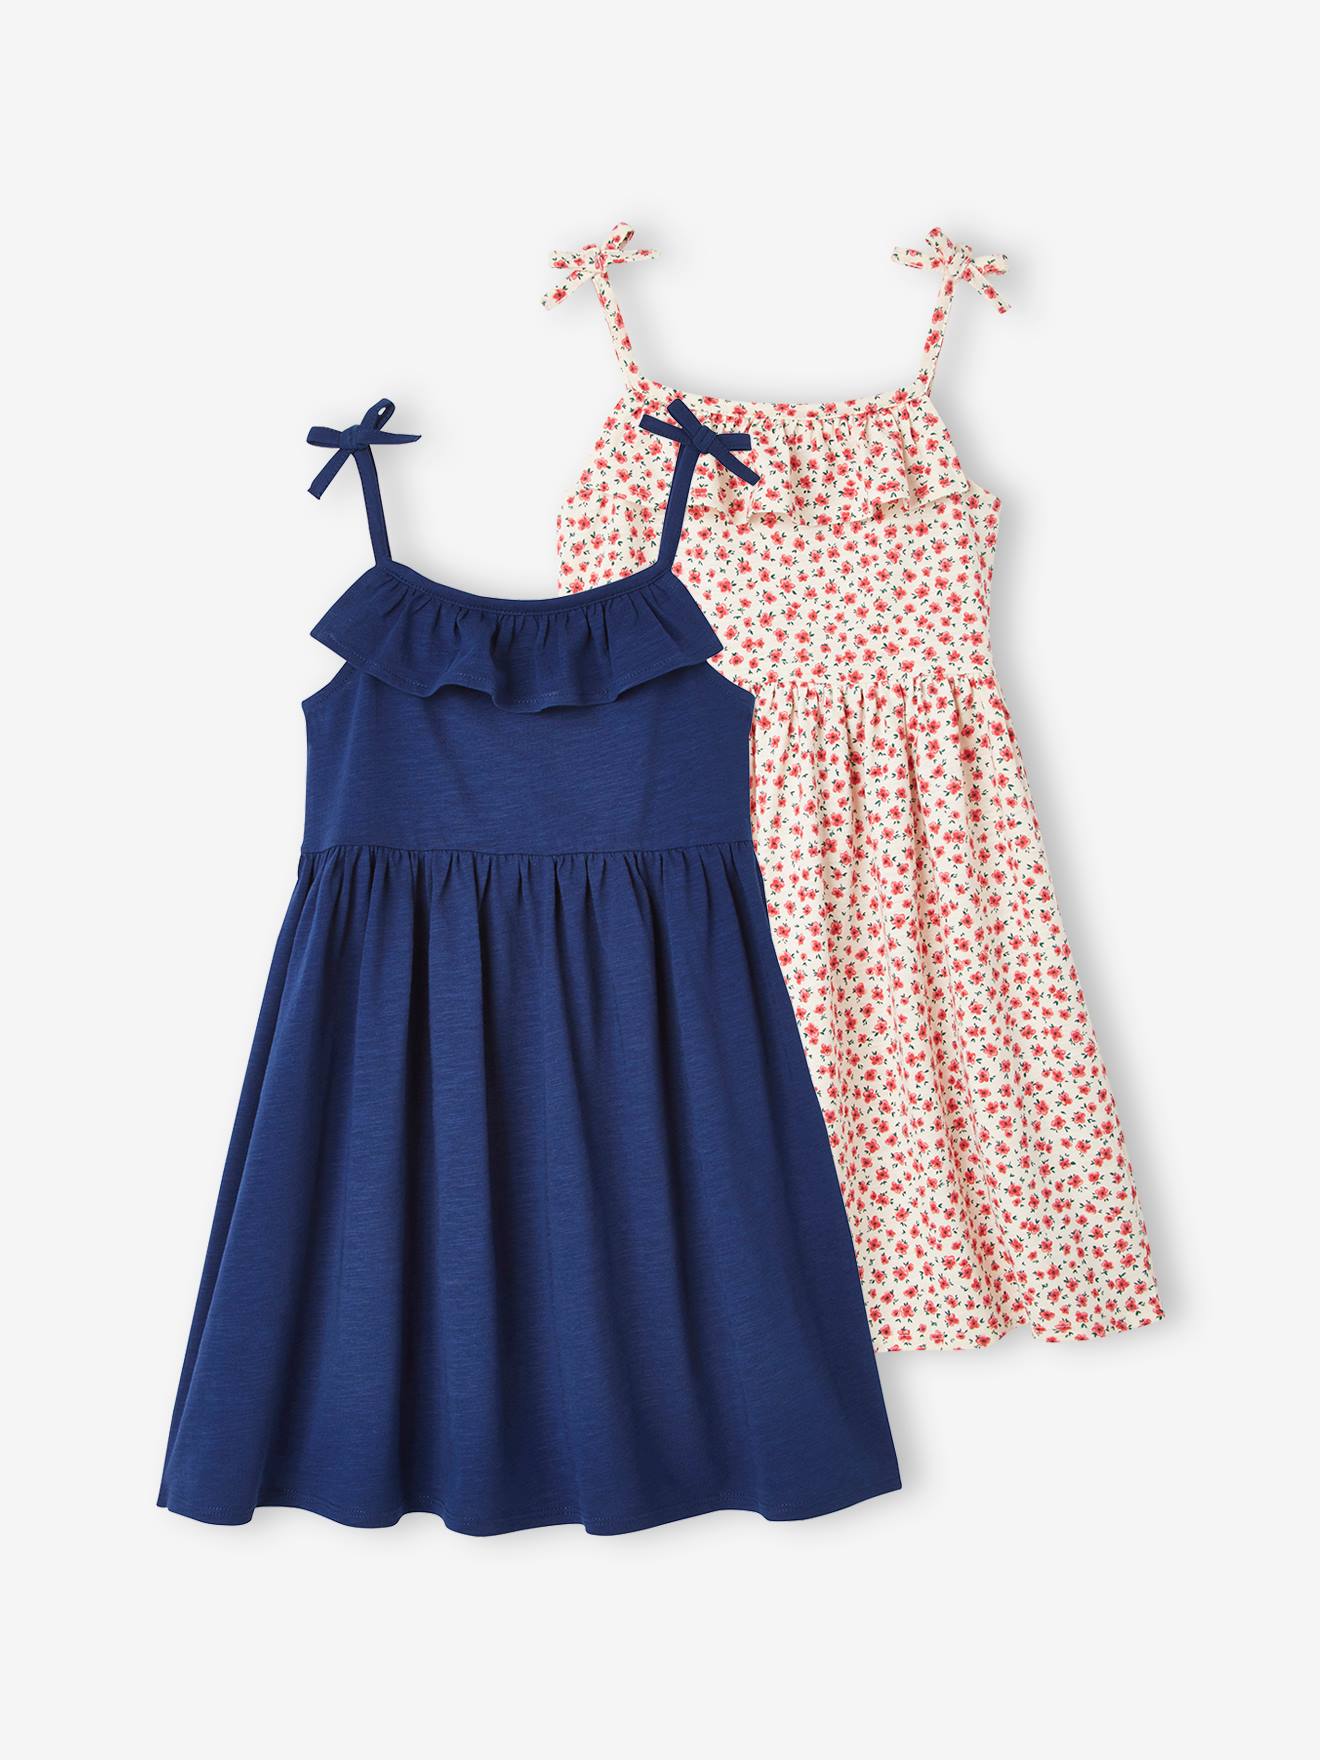 Baby Girl Blue Dresses